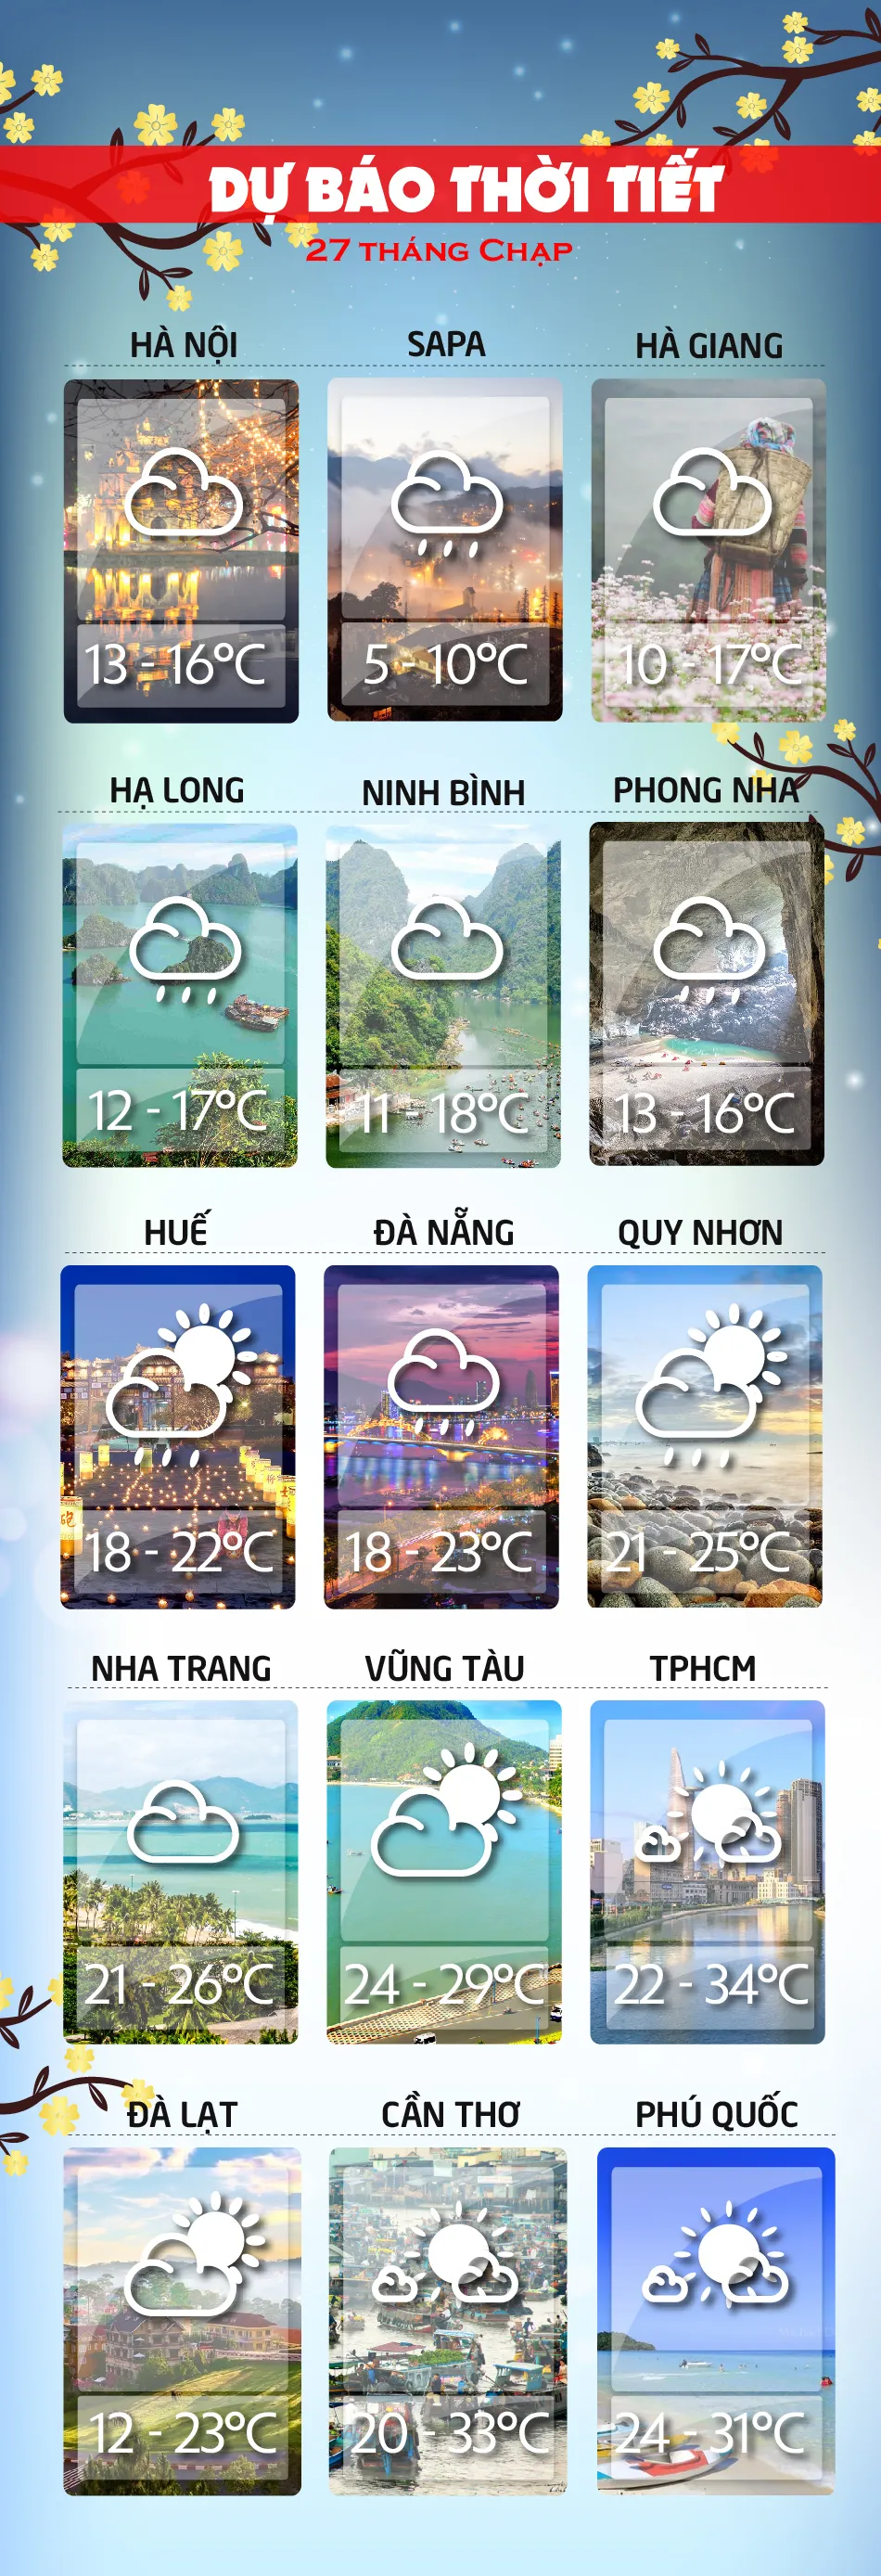 Dự báo thời tiết ngày mai 11/2/18 voh.com.vn